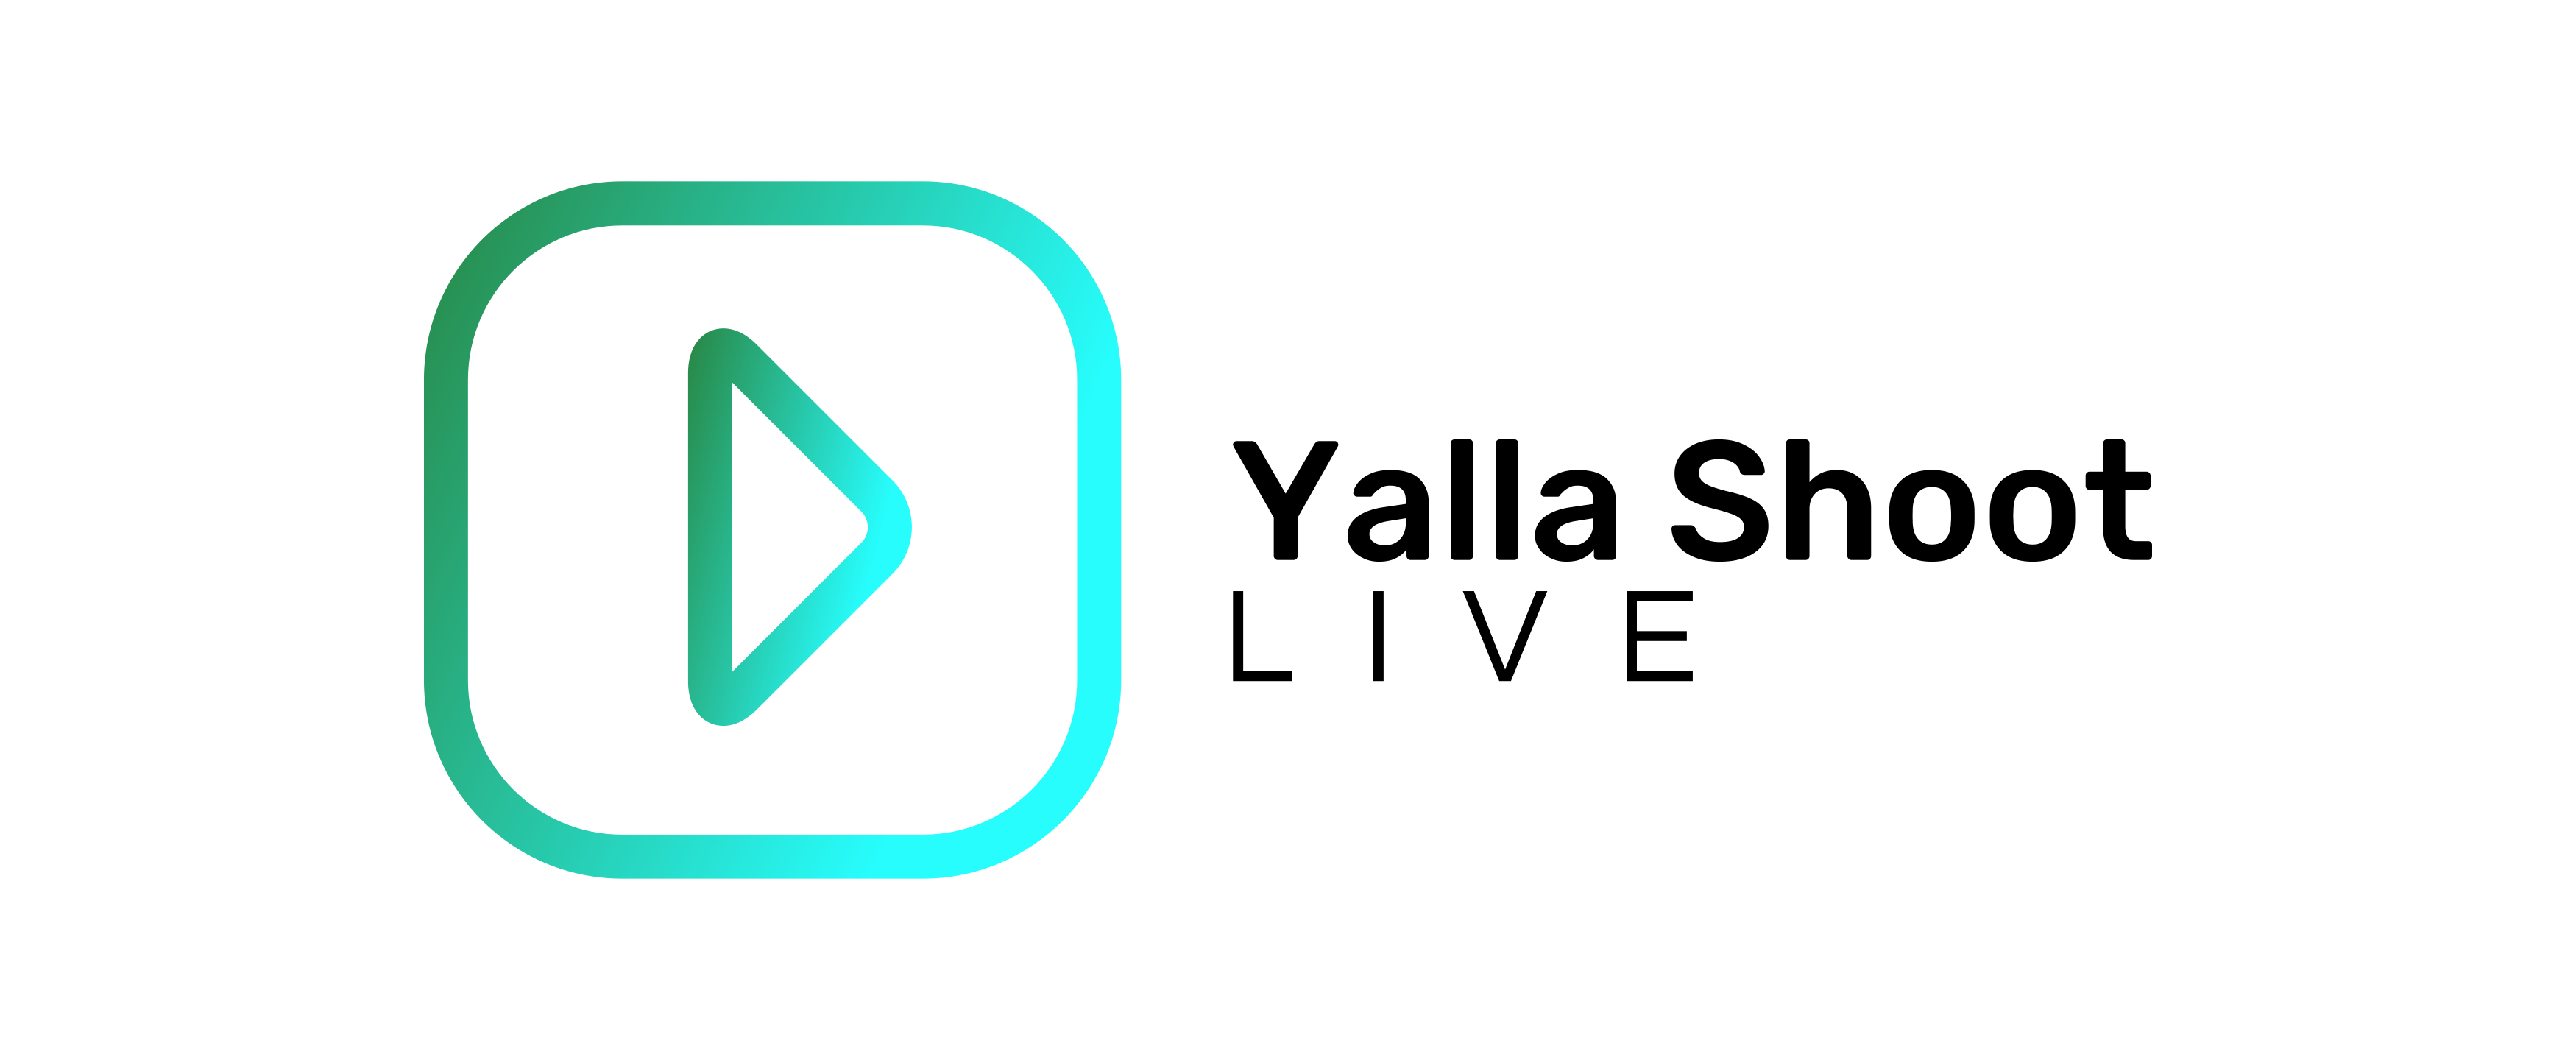 Standing Bundesliga 1 -   -  Yalla Shoot Live English